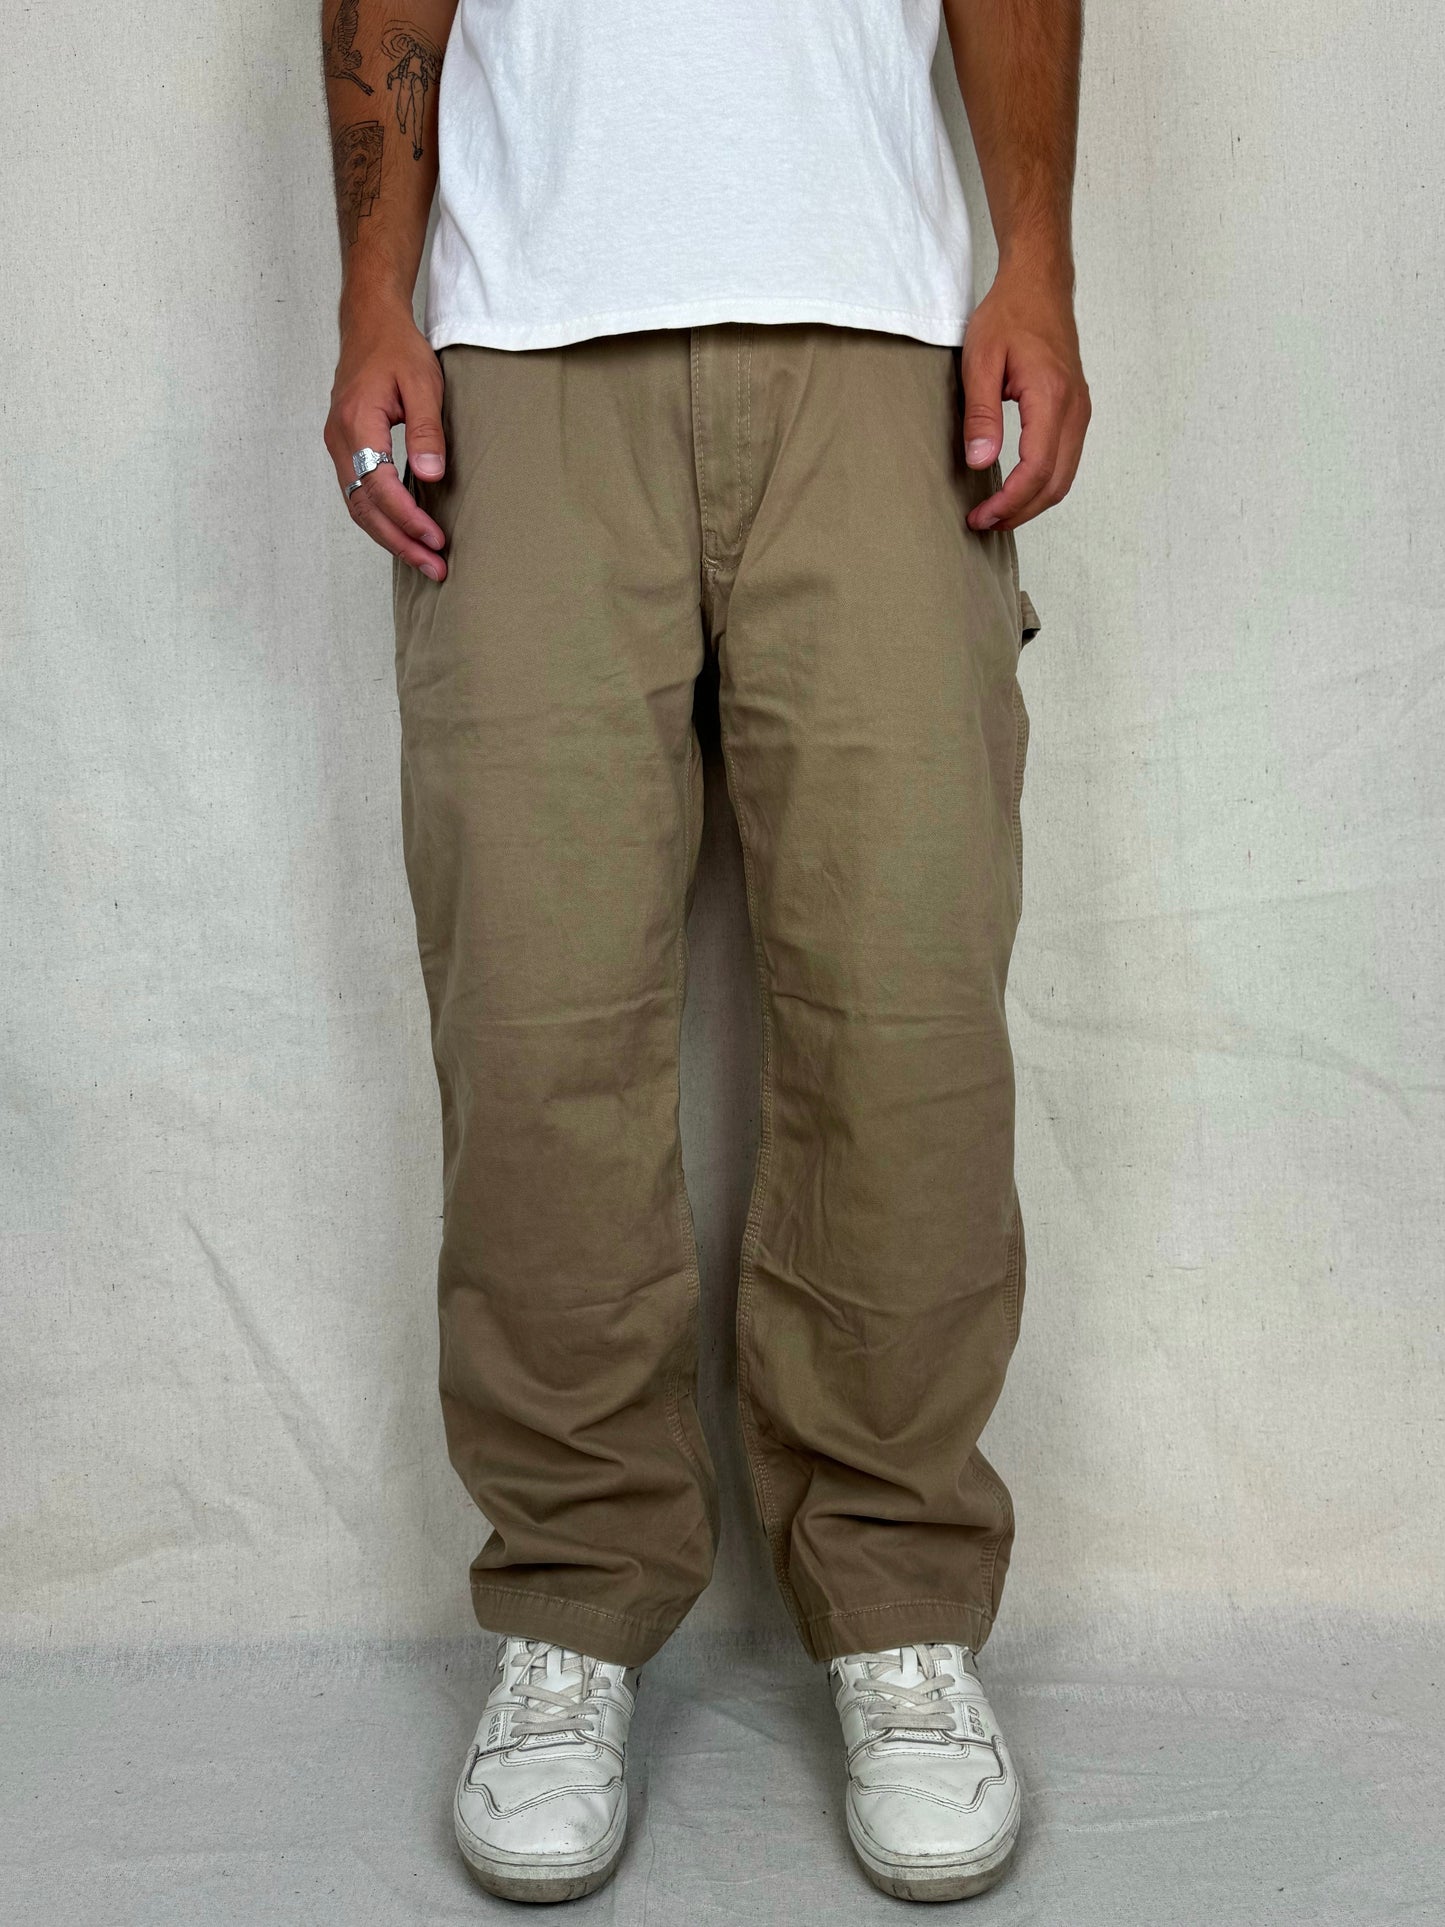 90's Carhartt Vintage Carpenter Pants Size 33x30